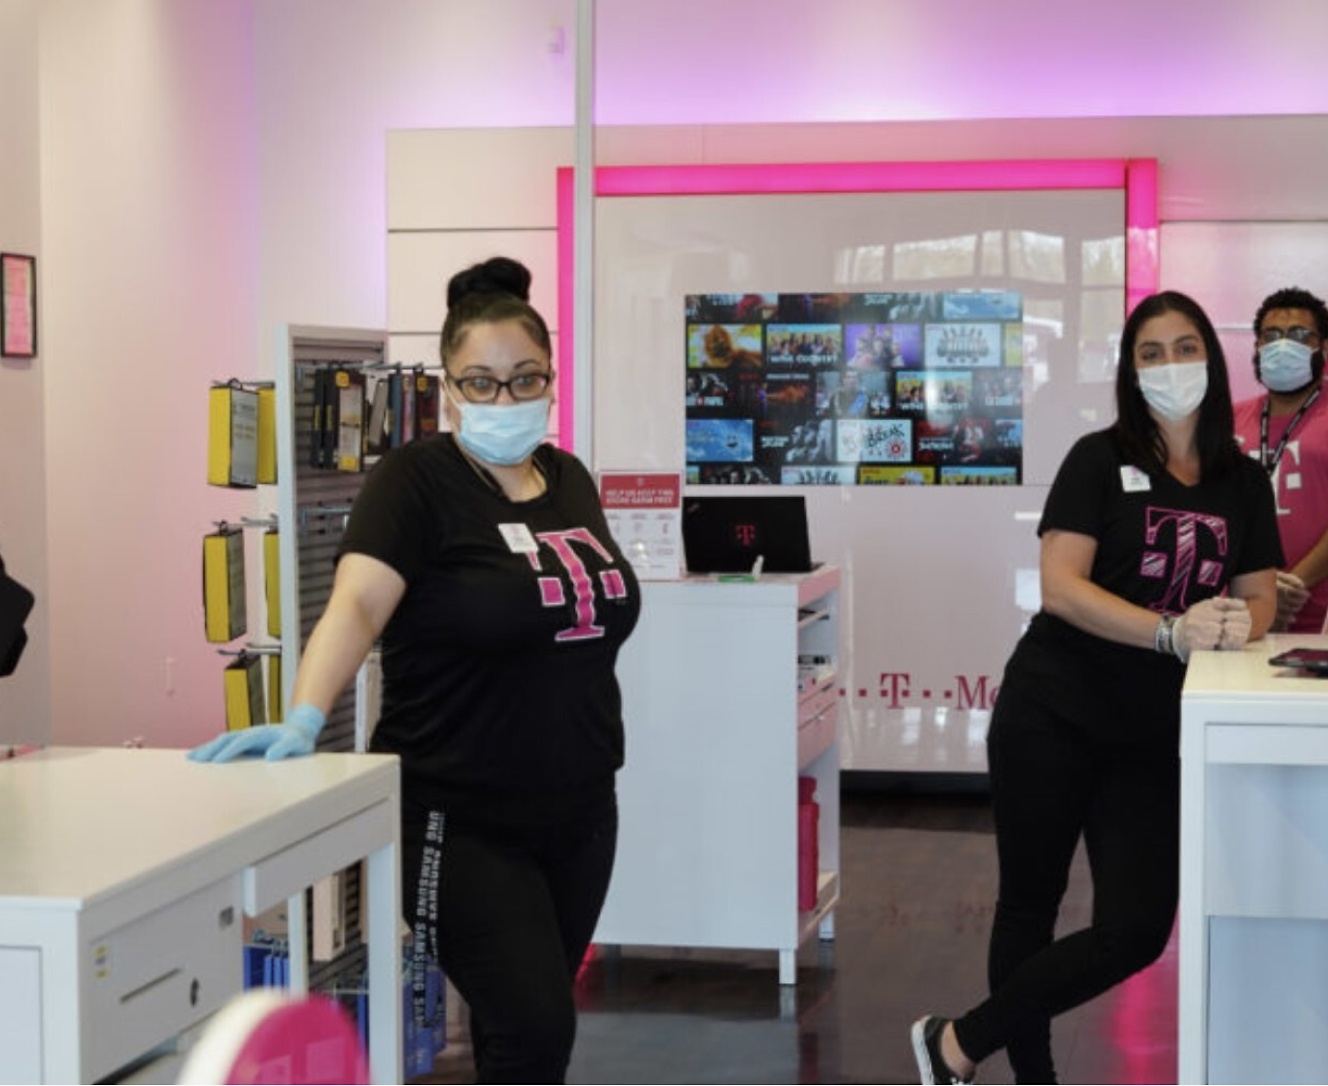 Um grupo de pessoas com máscaras faciais numa loja.